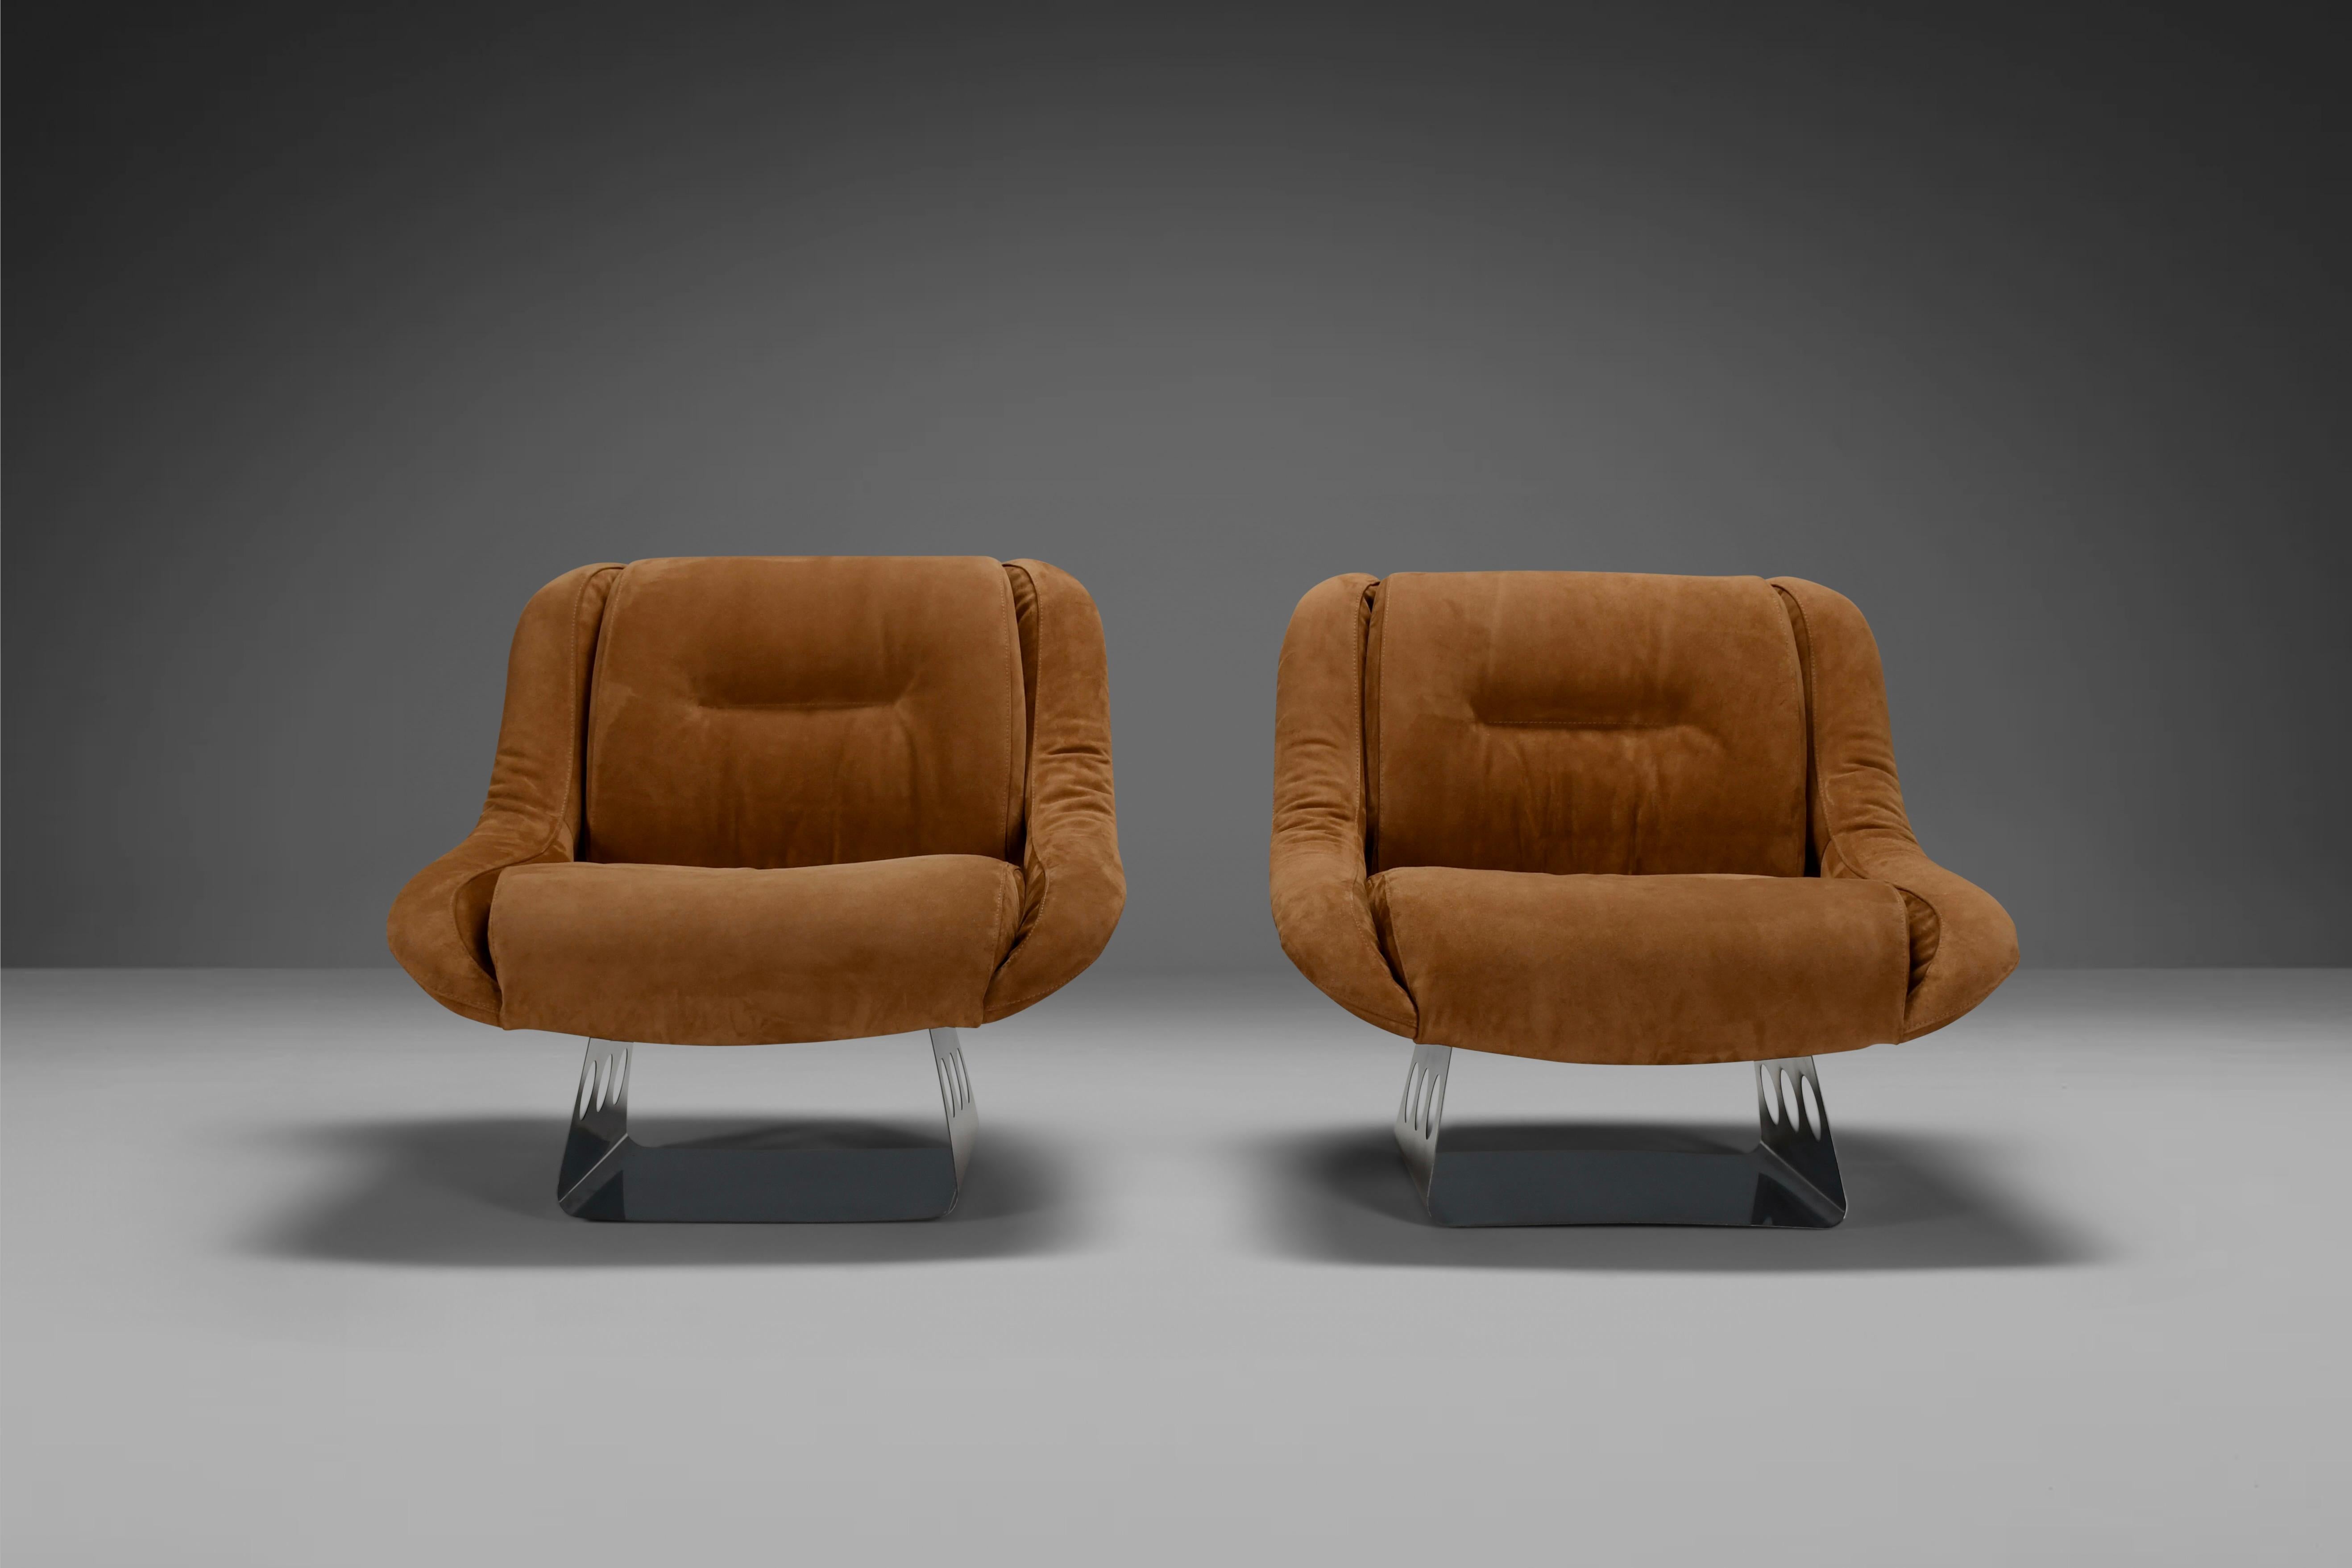 Schöne und bequeme Liegestühle in sehr gutem Zustand.

Diese Stühle wurden 1974 von der Firma RIMA Padova in Italien hergestellt.

Die Stühle sind mit hochwertigem beigem Wildleder gepolstert, das sich weich anfühlt und sehr natürlich wirkt.

Das